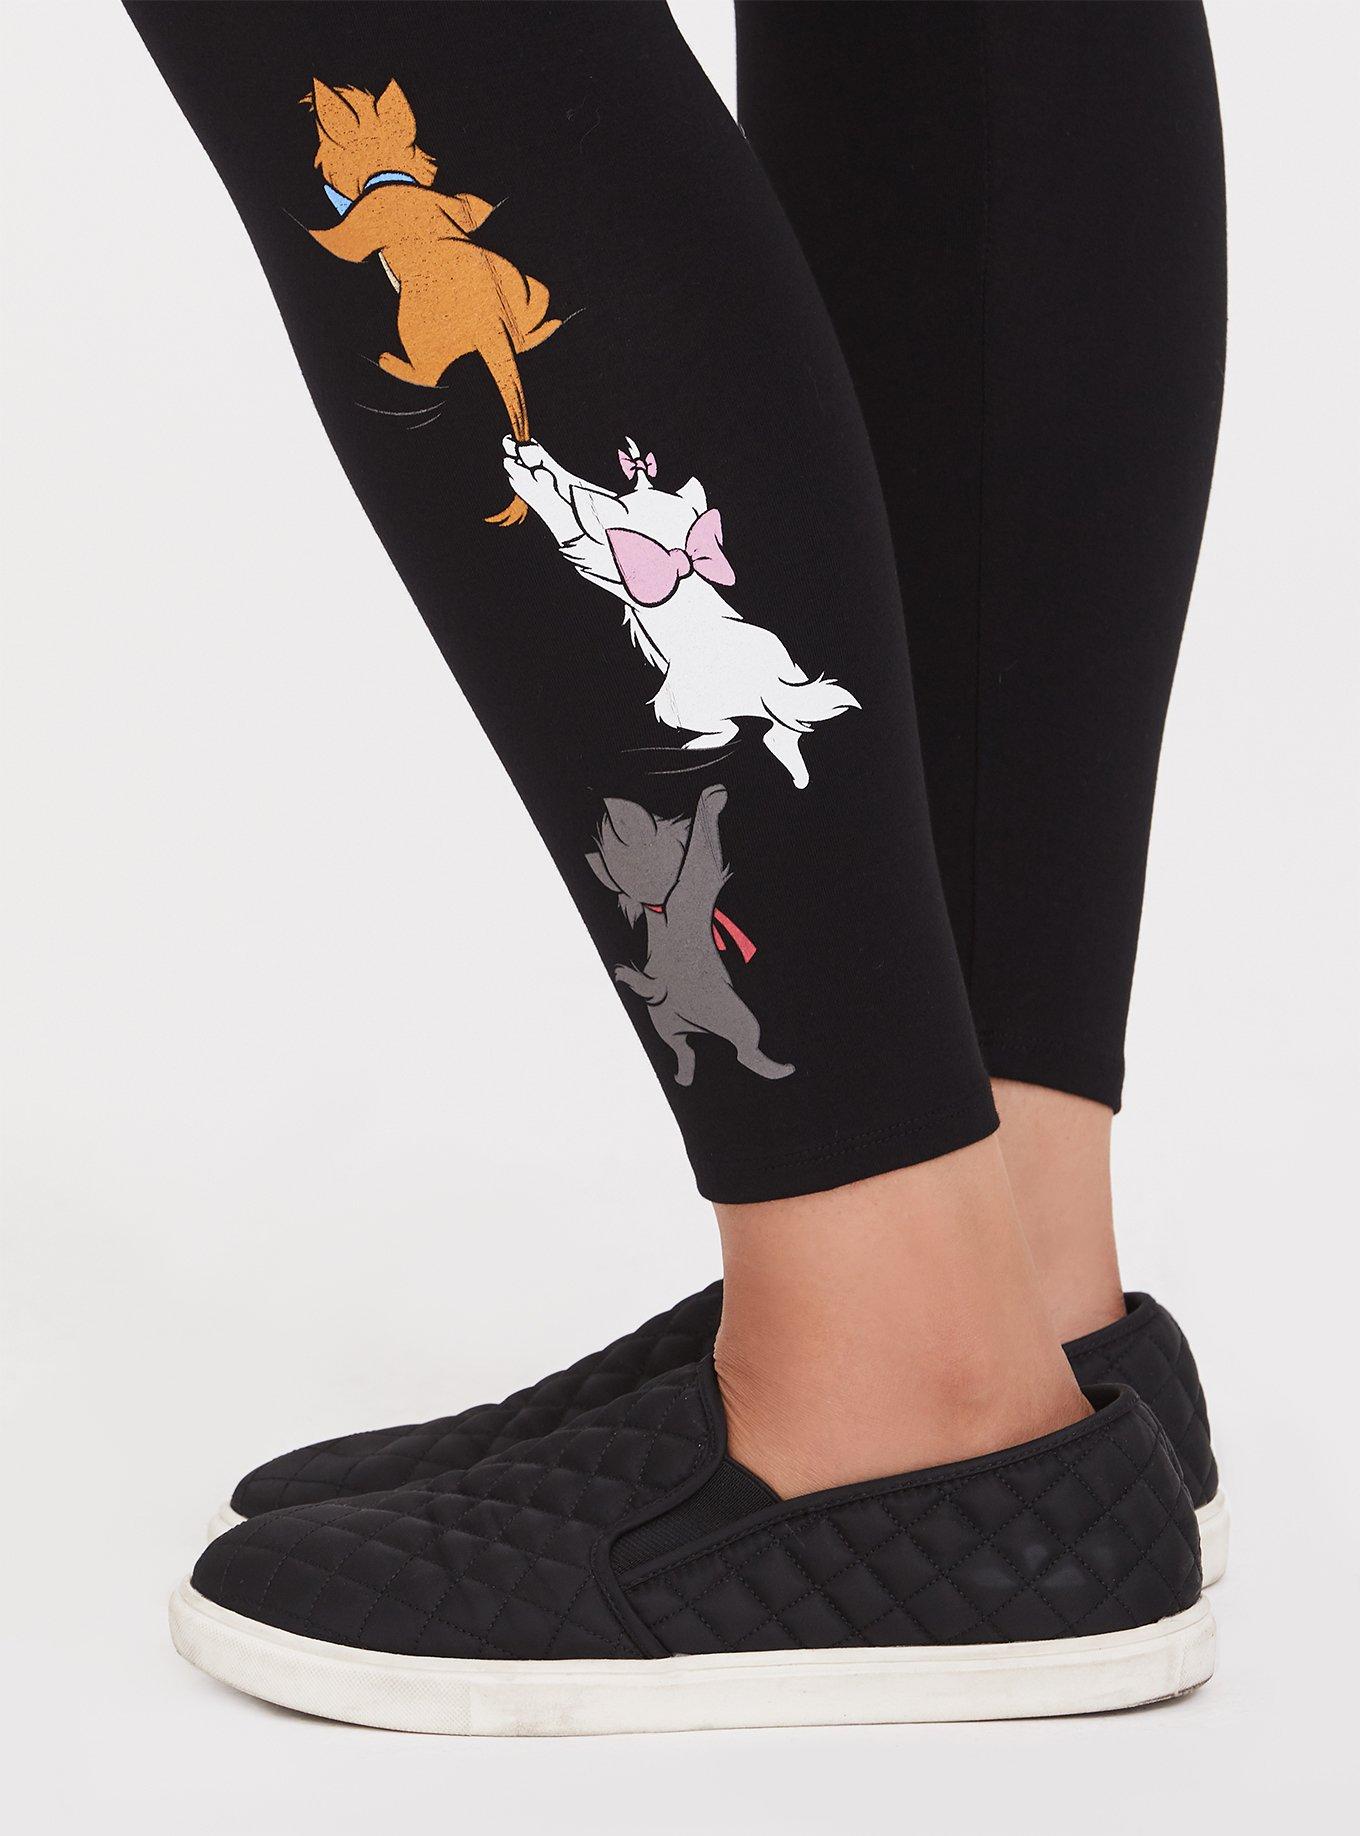 Plus Size - Full Length Signature Waist Cat Neon Thread Legging - Torrid